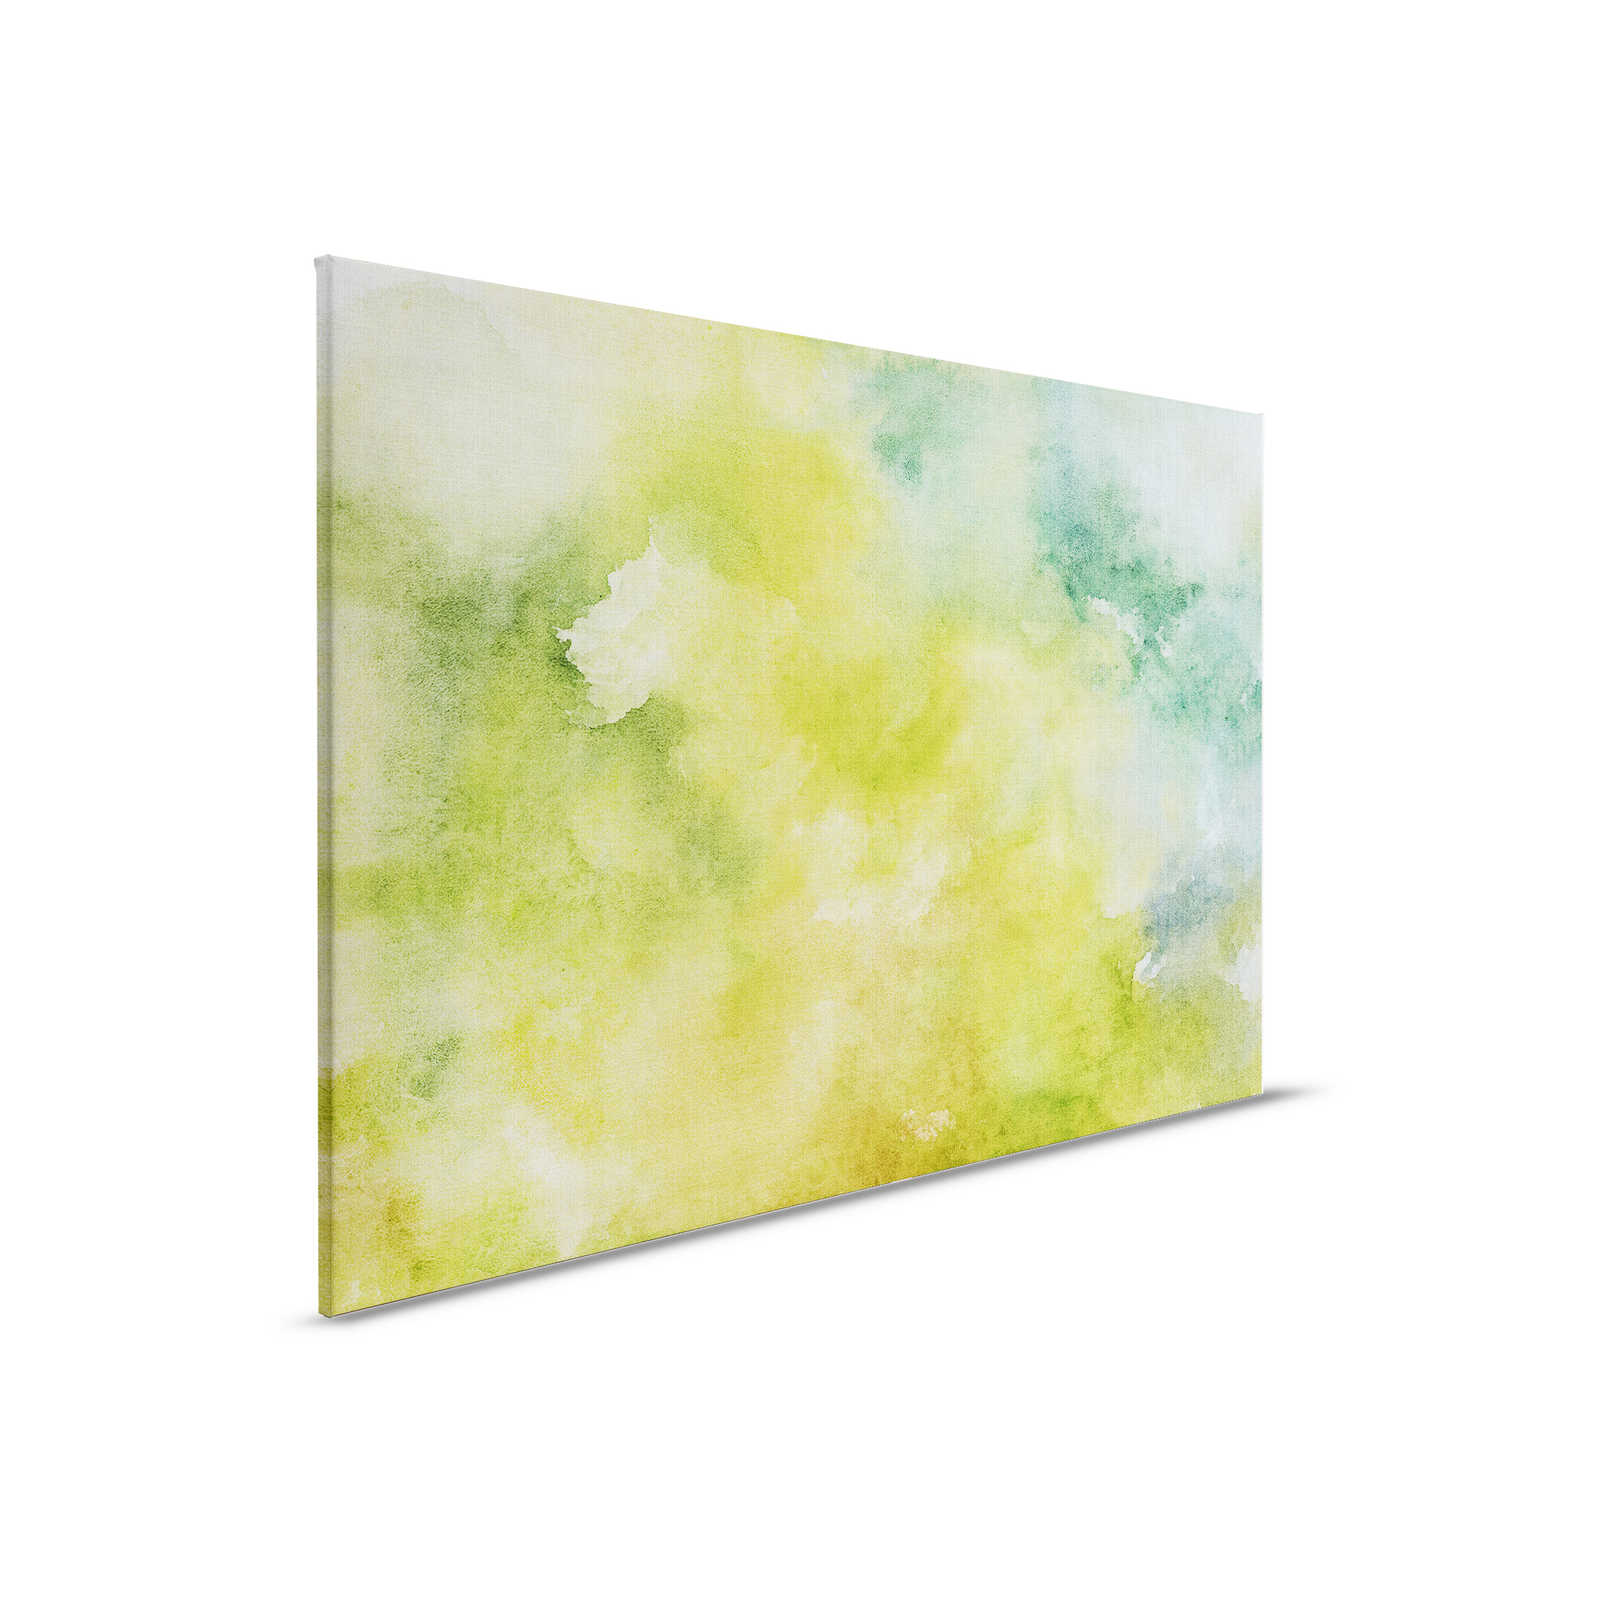 Aquarel 3 - Groen aquarel motief als canvas schilderij in naturel linnen look - 0.90 m x 0.60 m
